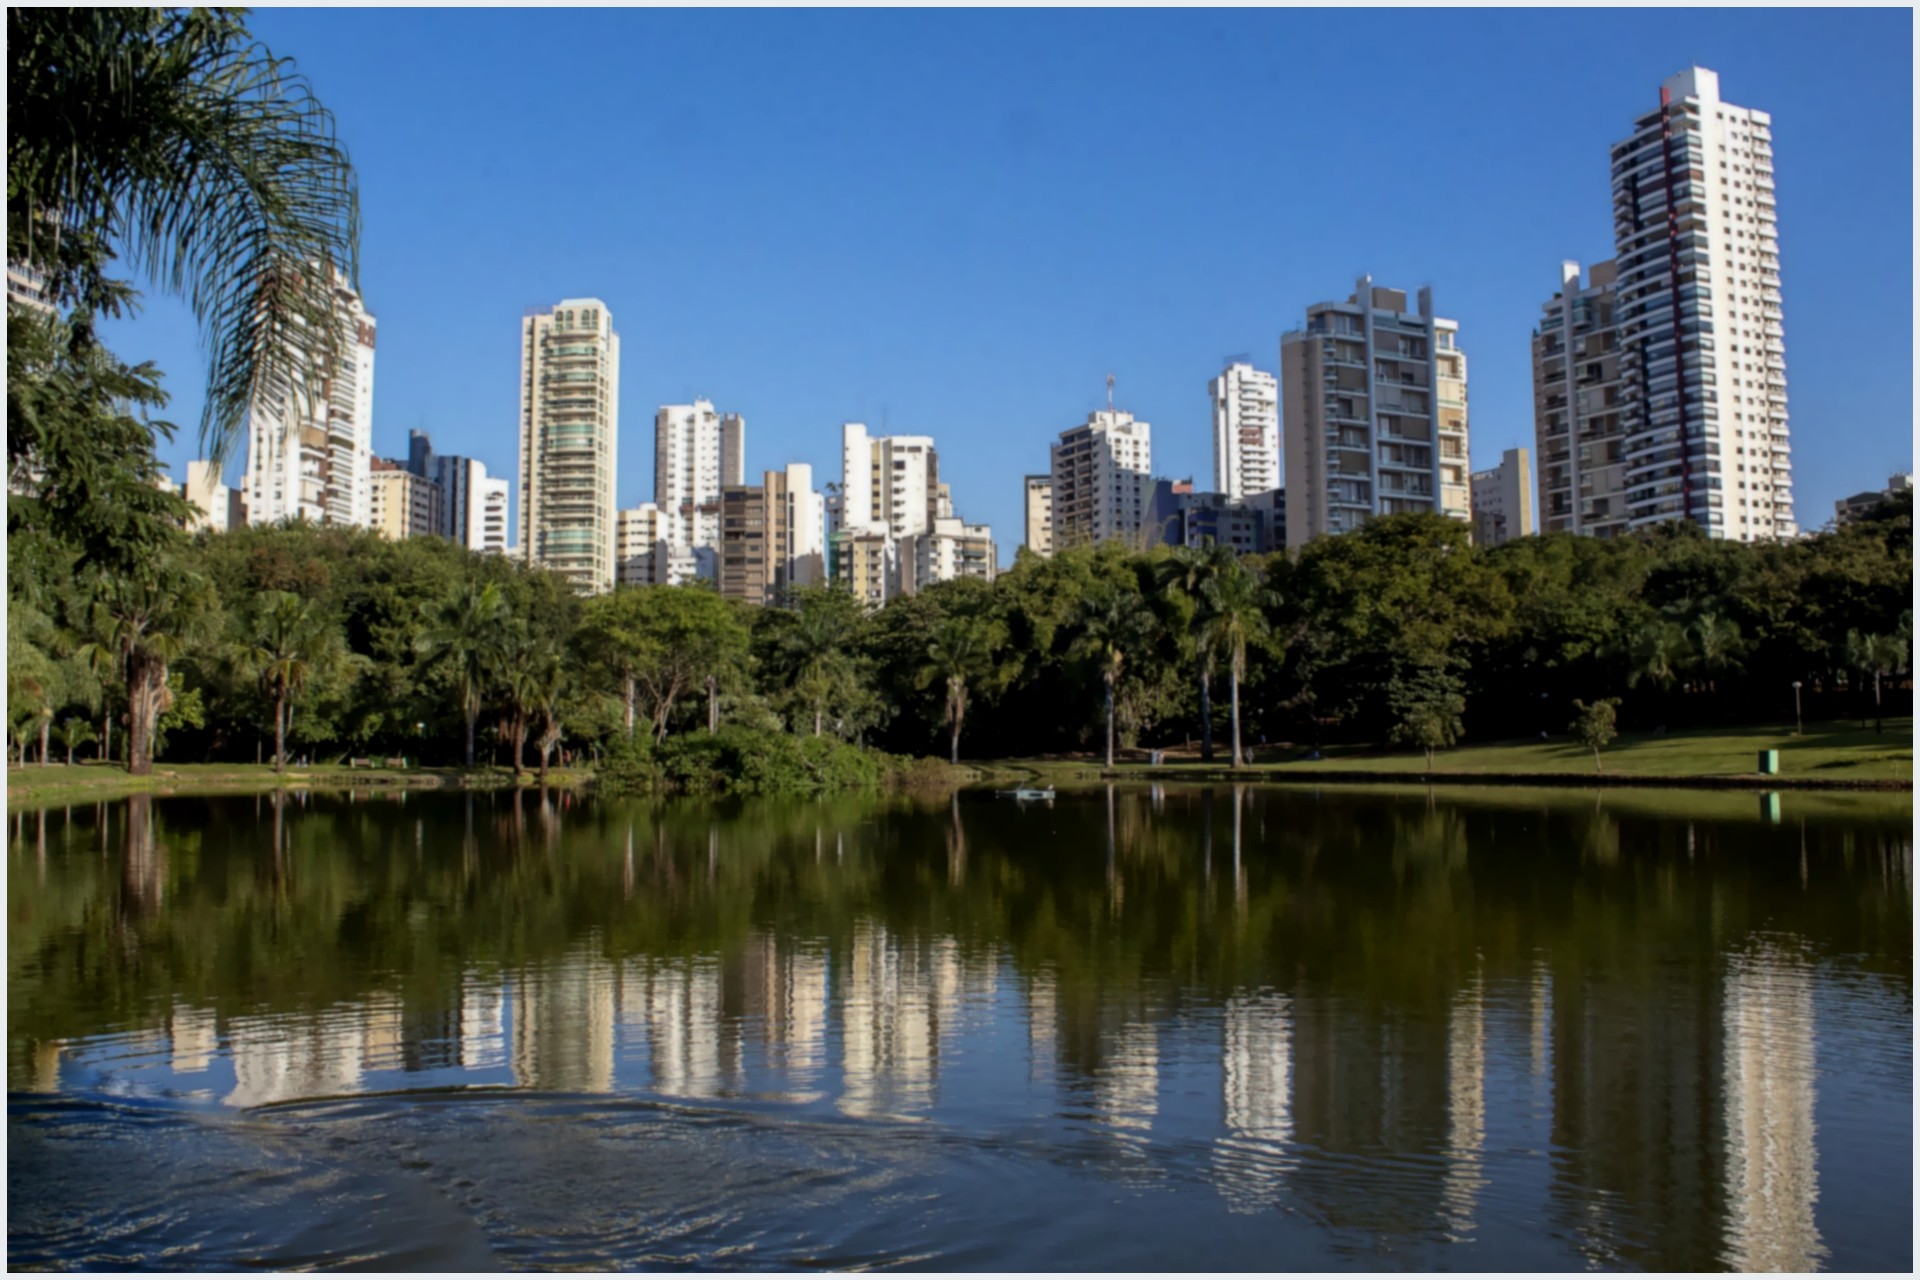 Lugares para sair em Goiânia: 5 dicas de roteiro